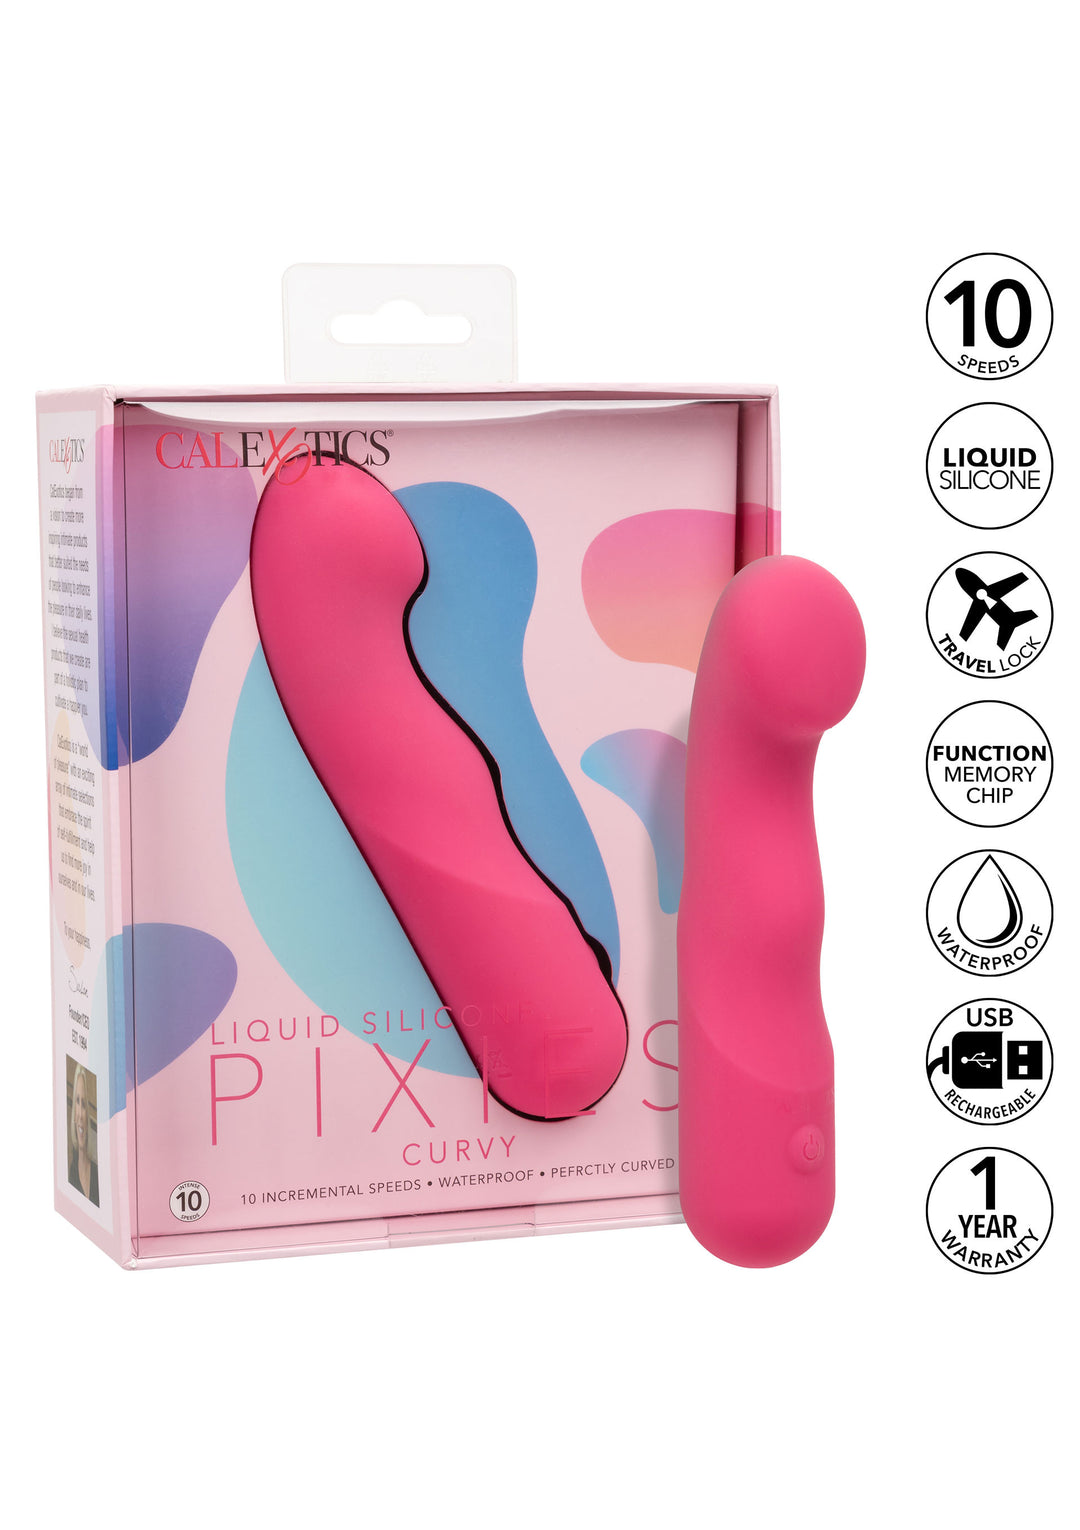 Pixies Curvy silicone vibrator